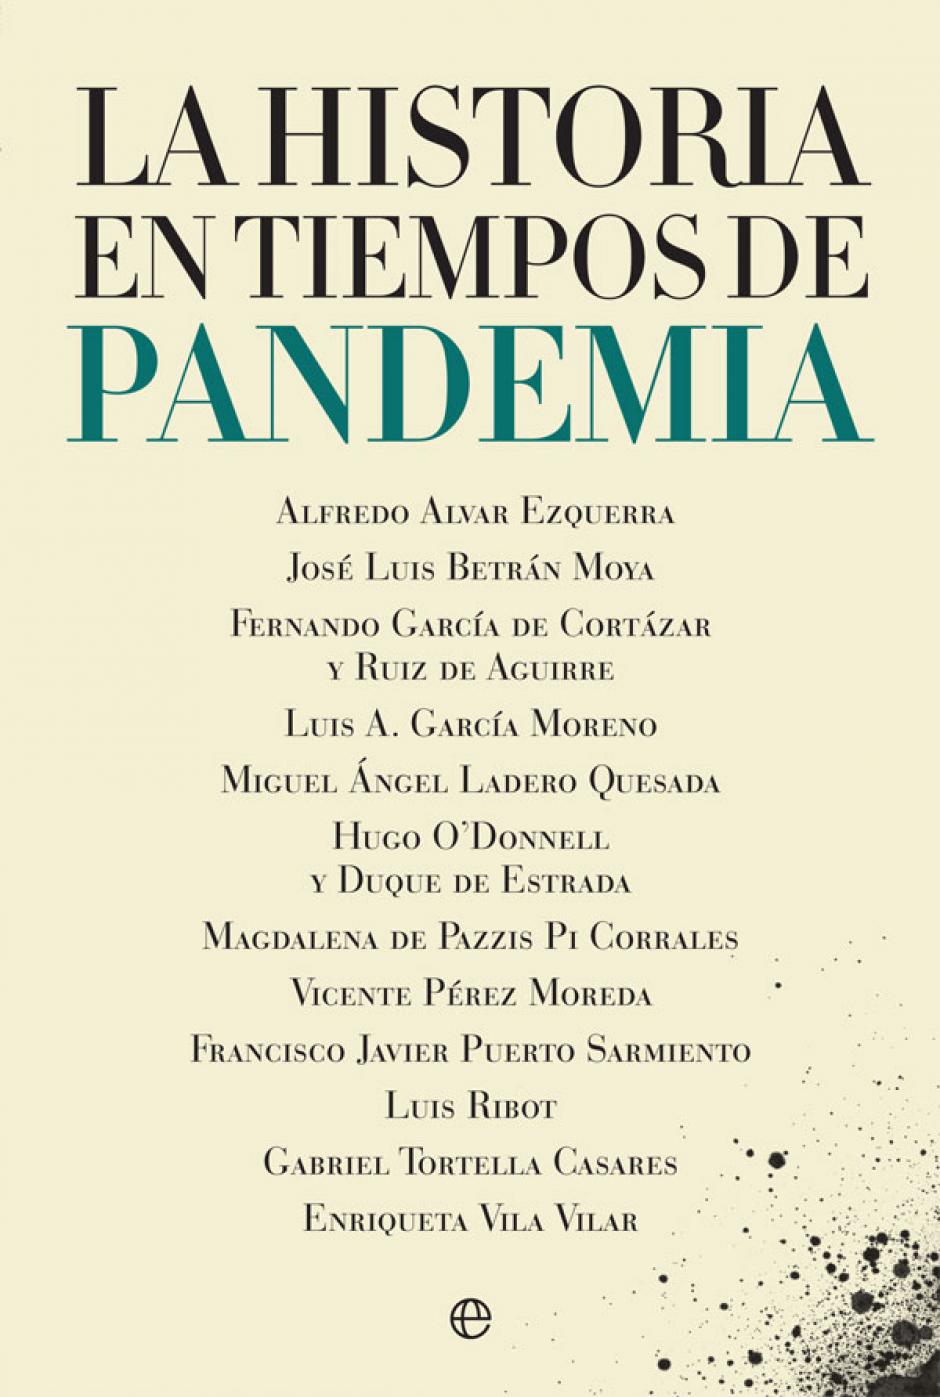 Libro «La historia en tiempos de pandemia», de varios autores.